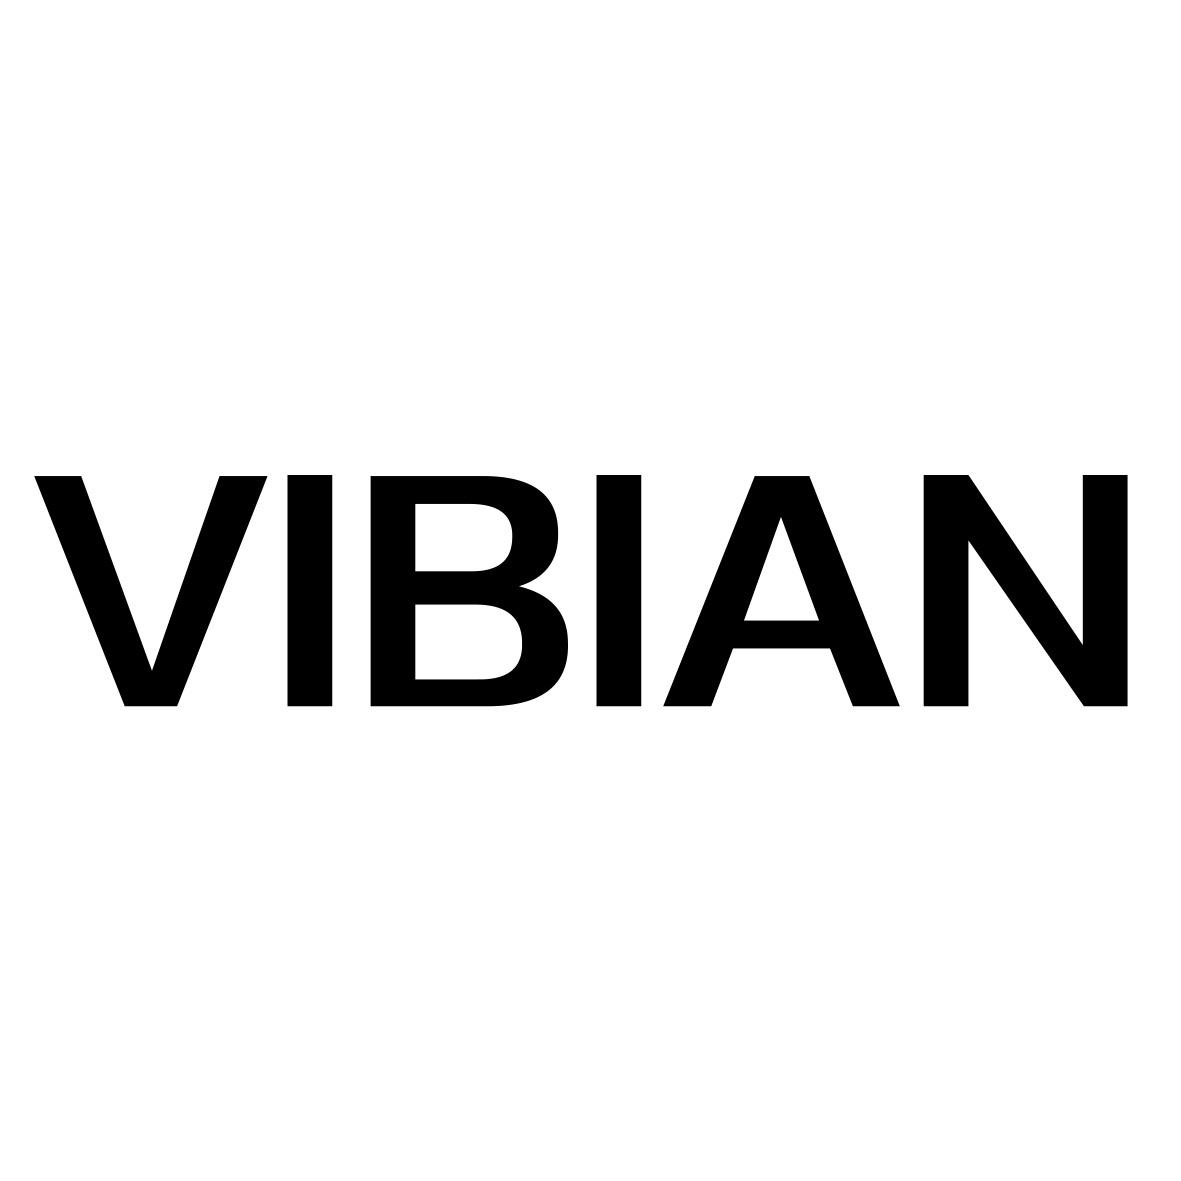 VIBIAN